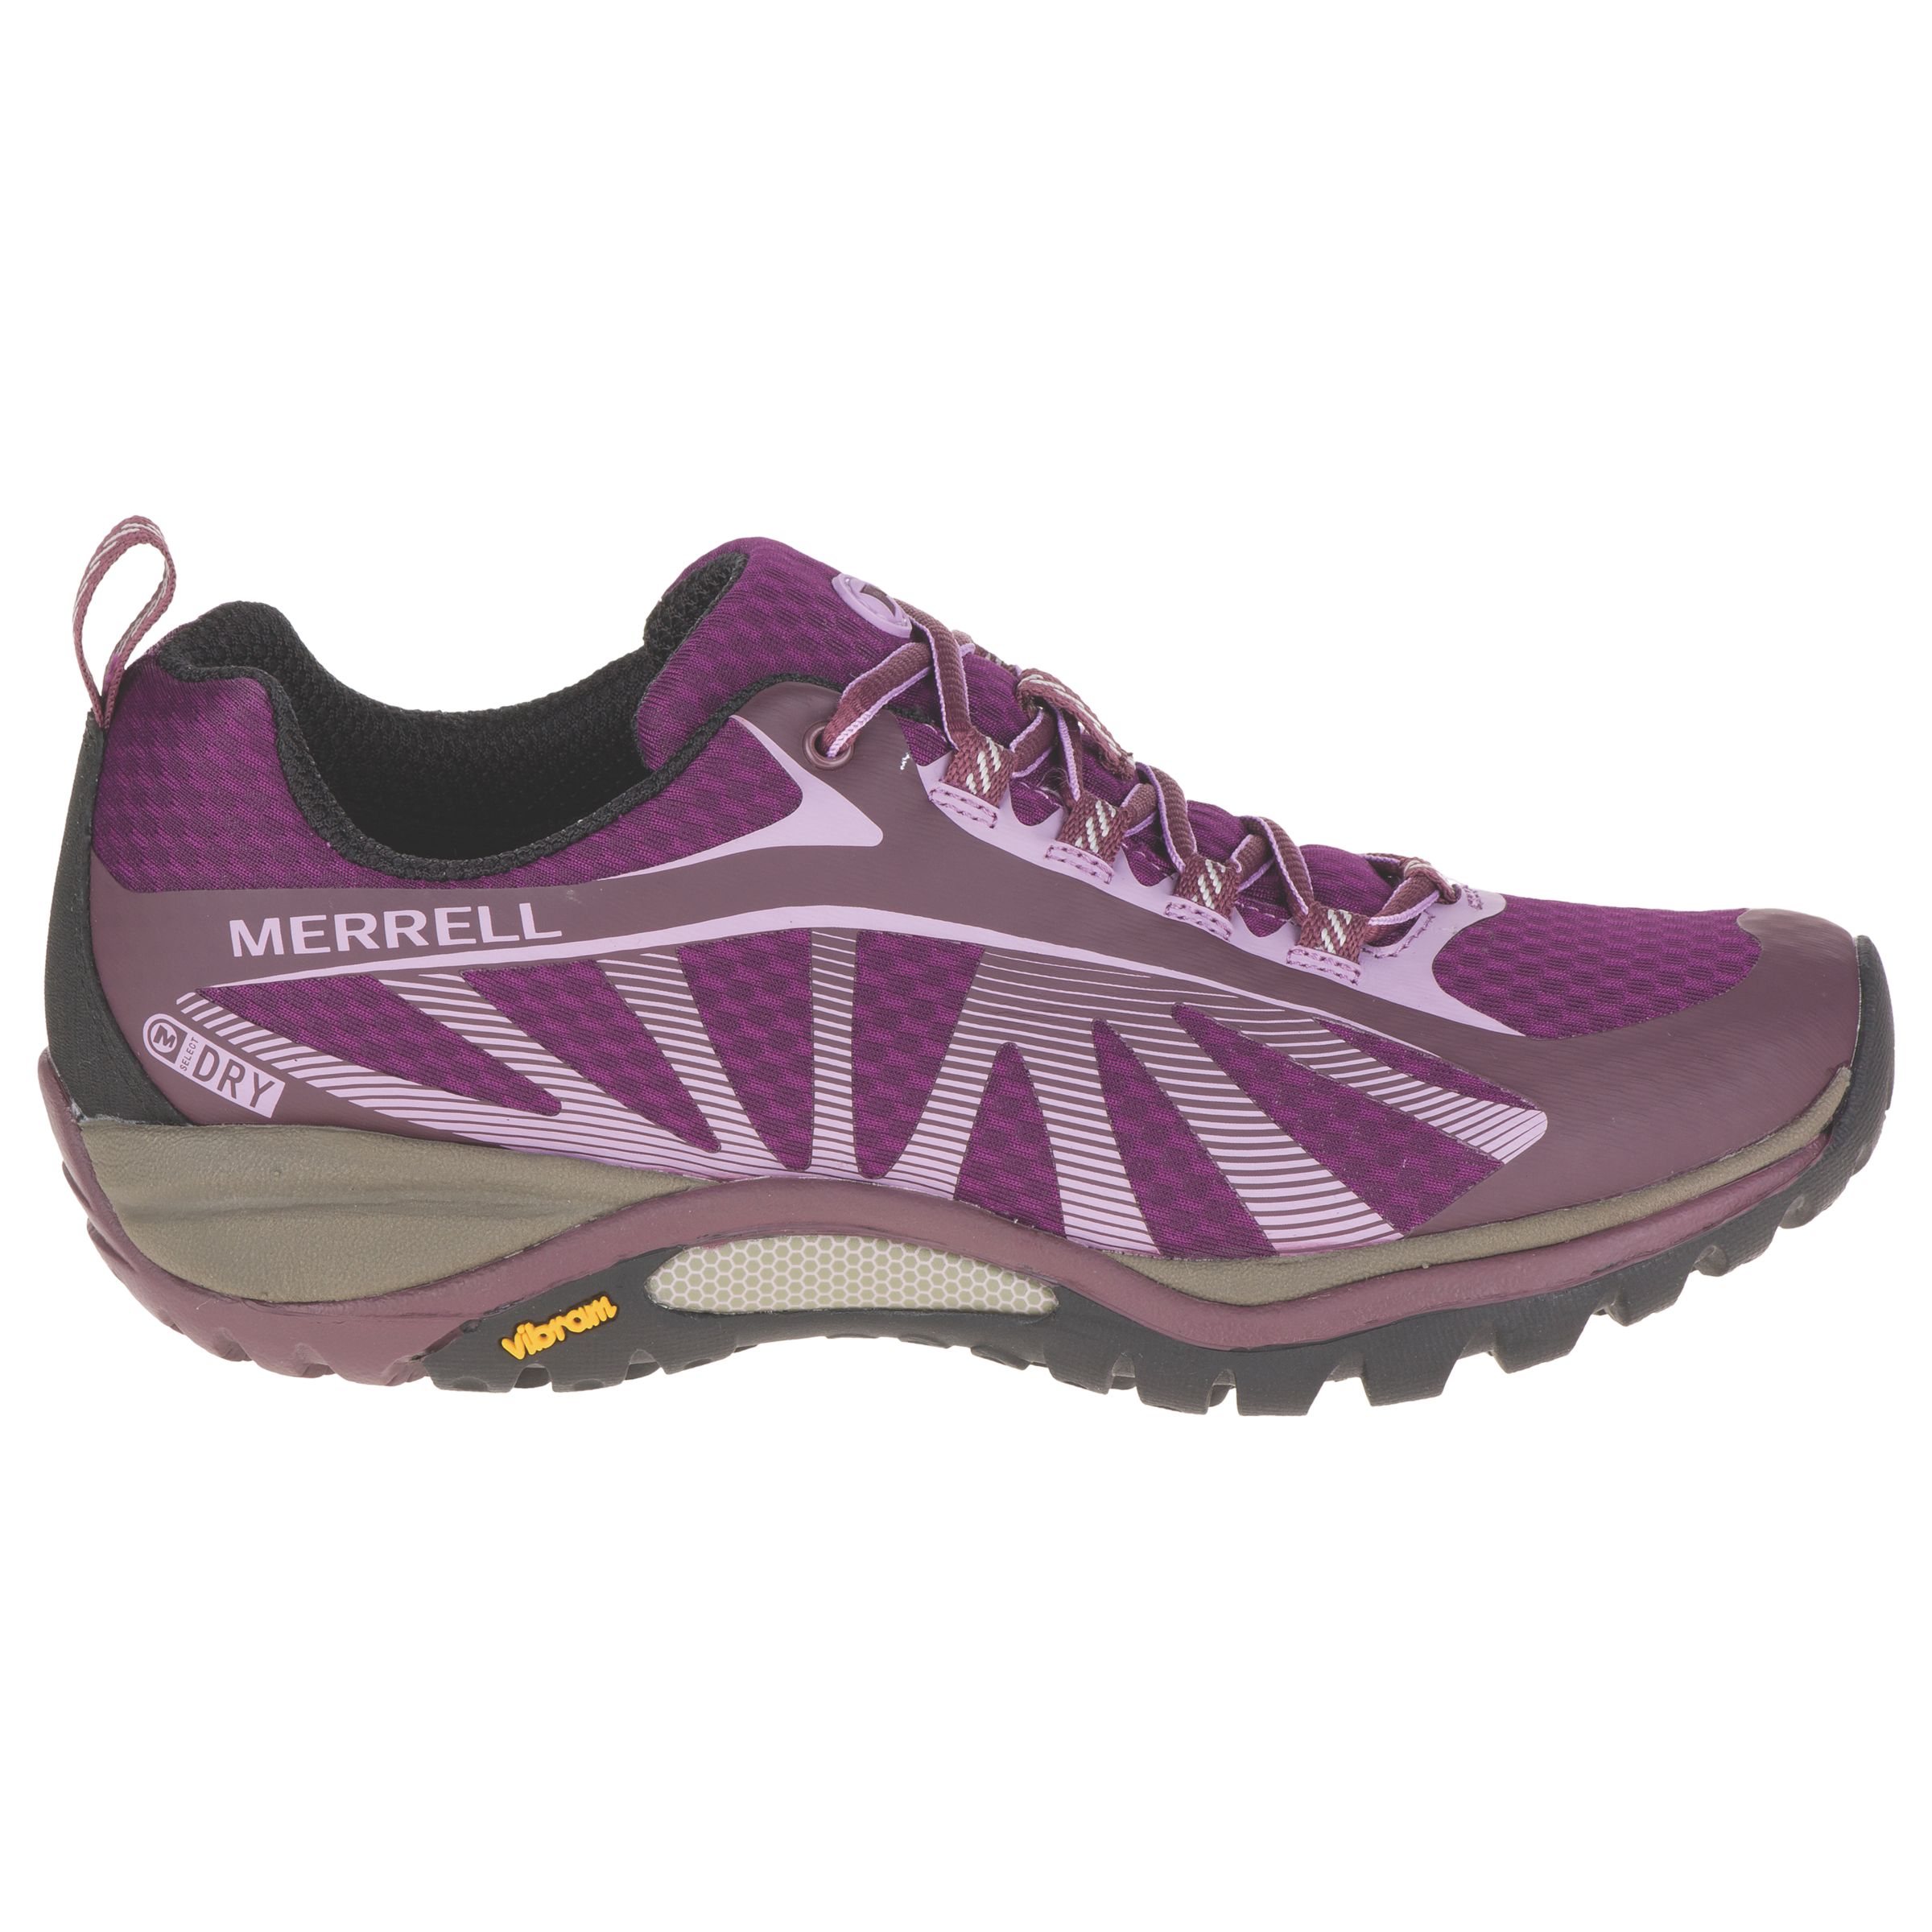 Merrell Siren Edge Waterproof Women's Walking Shoes, Purple at John ...